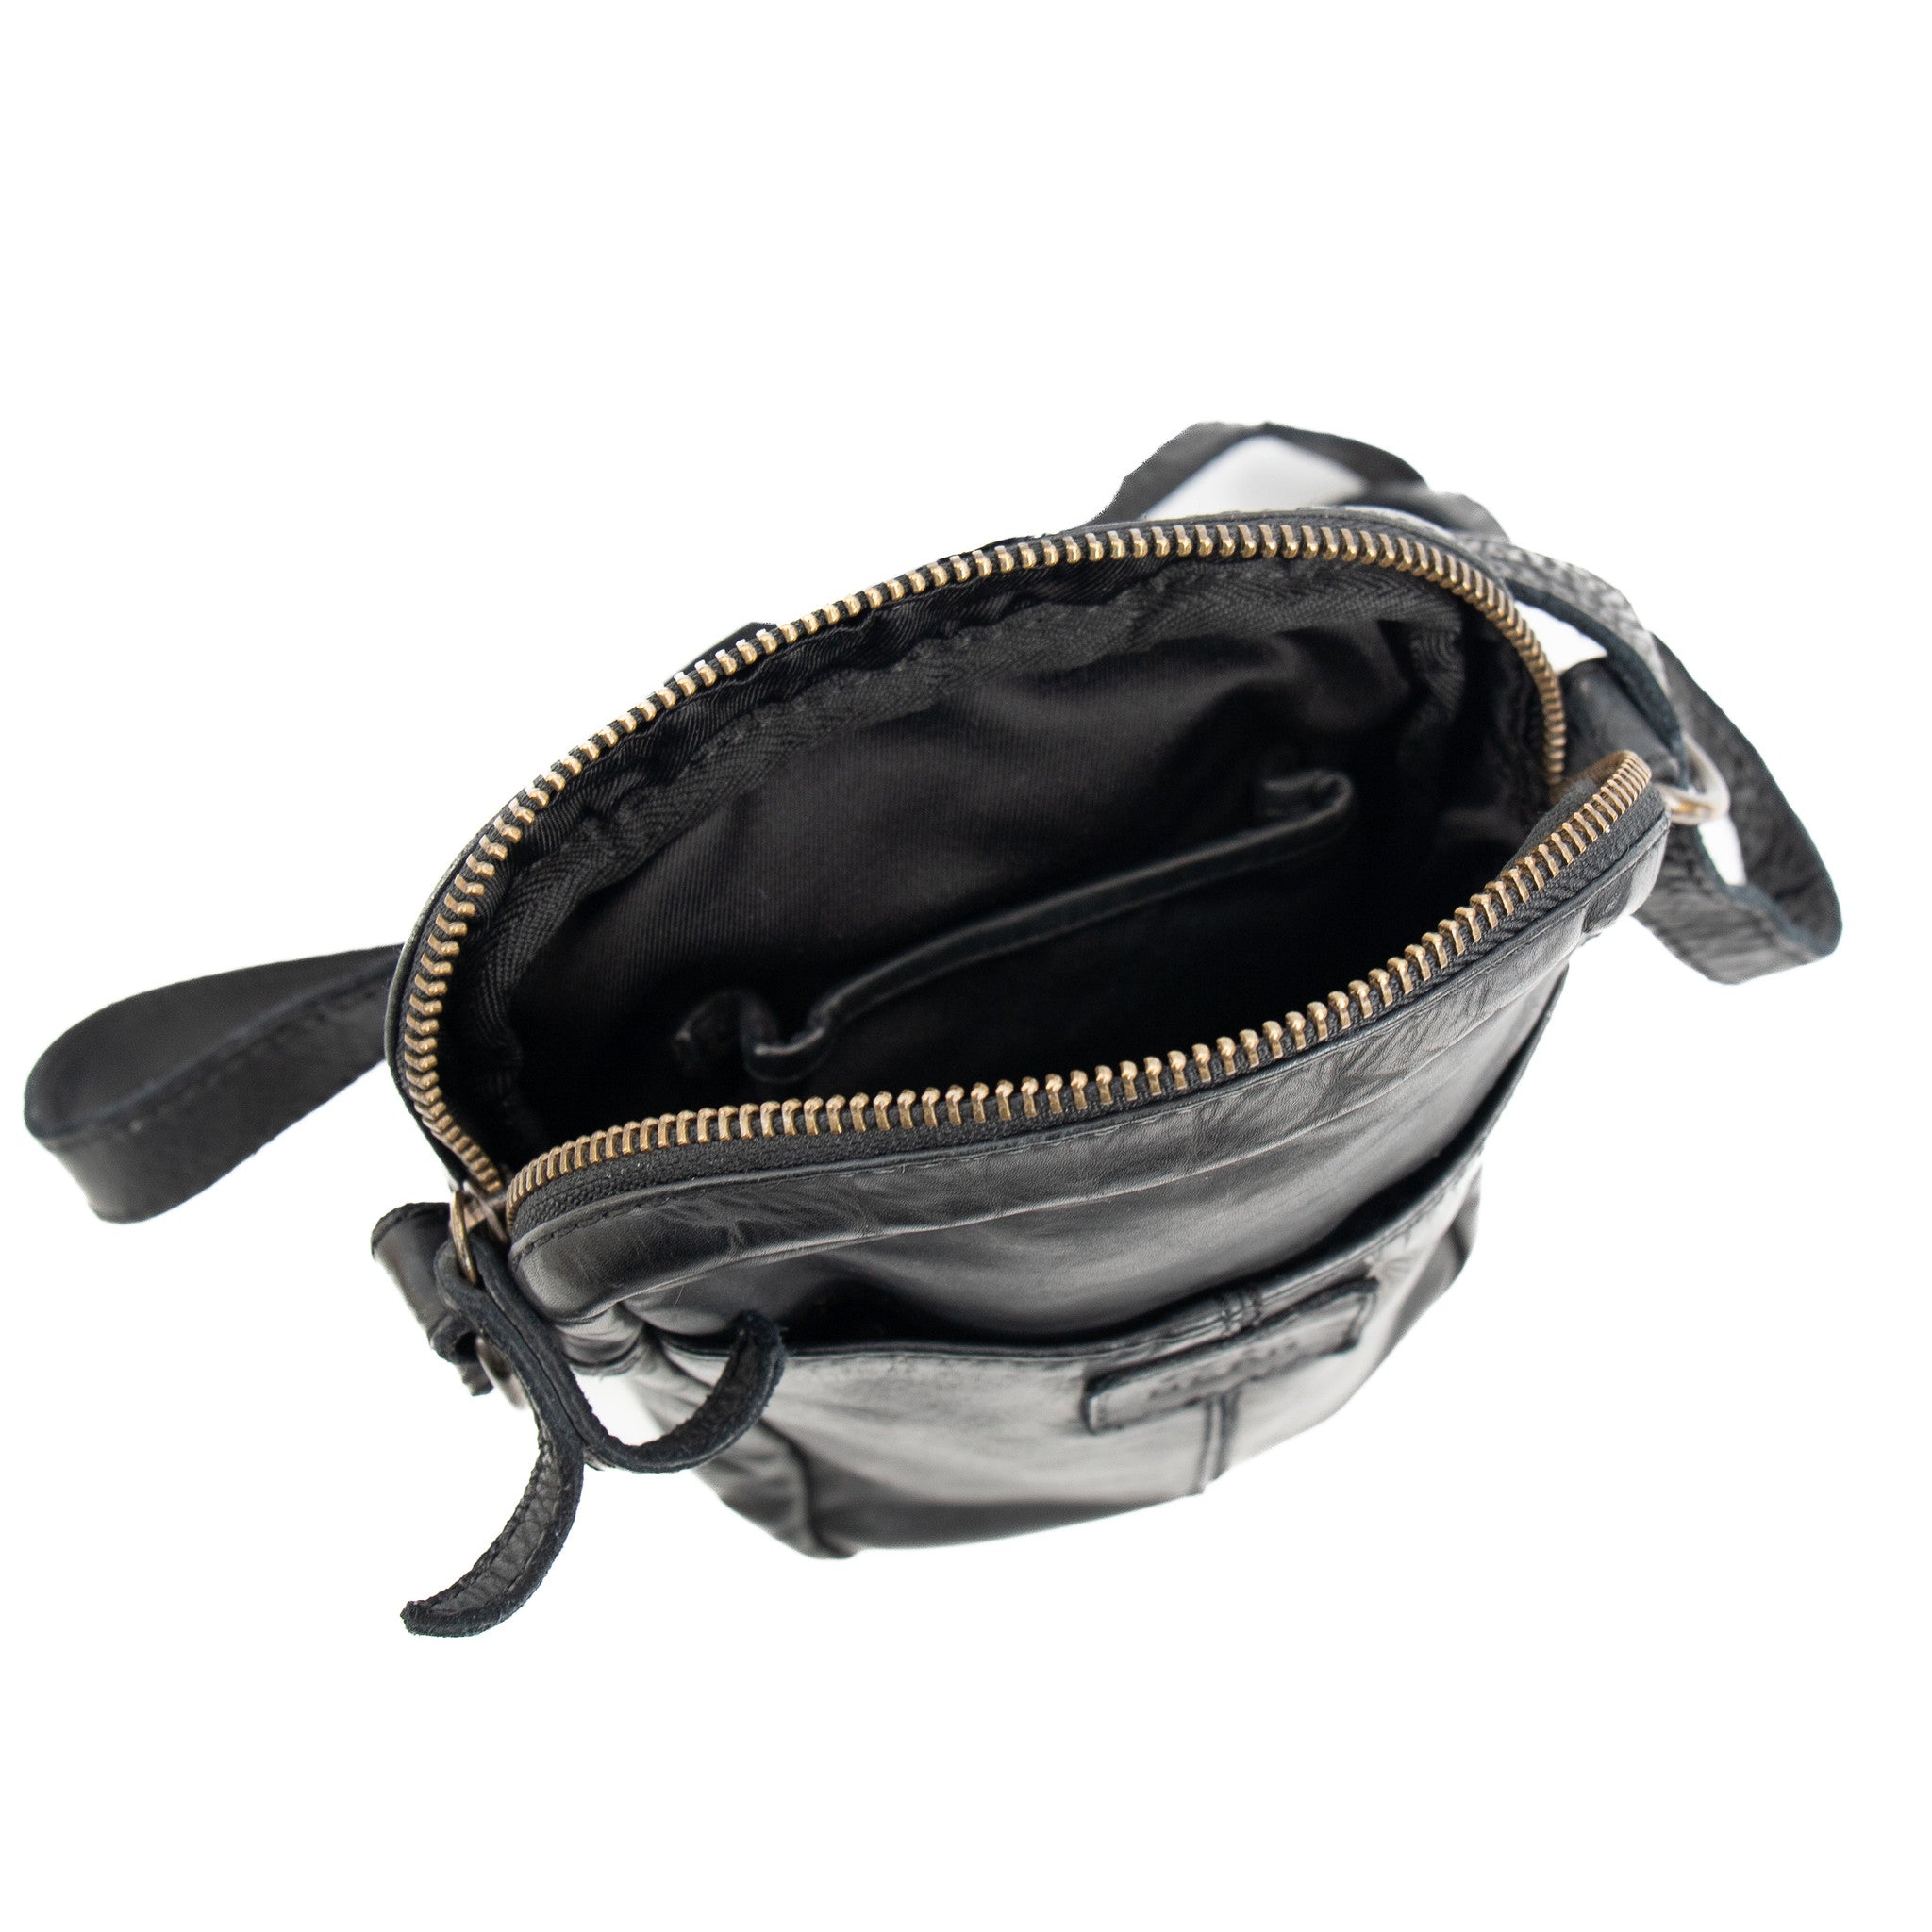 Shoulder bag 'Karin' black - CL 5243